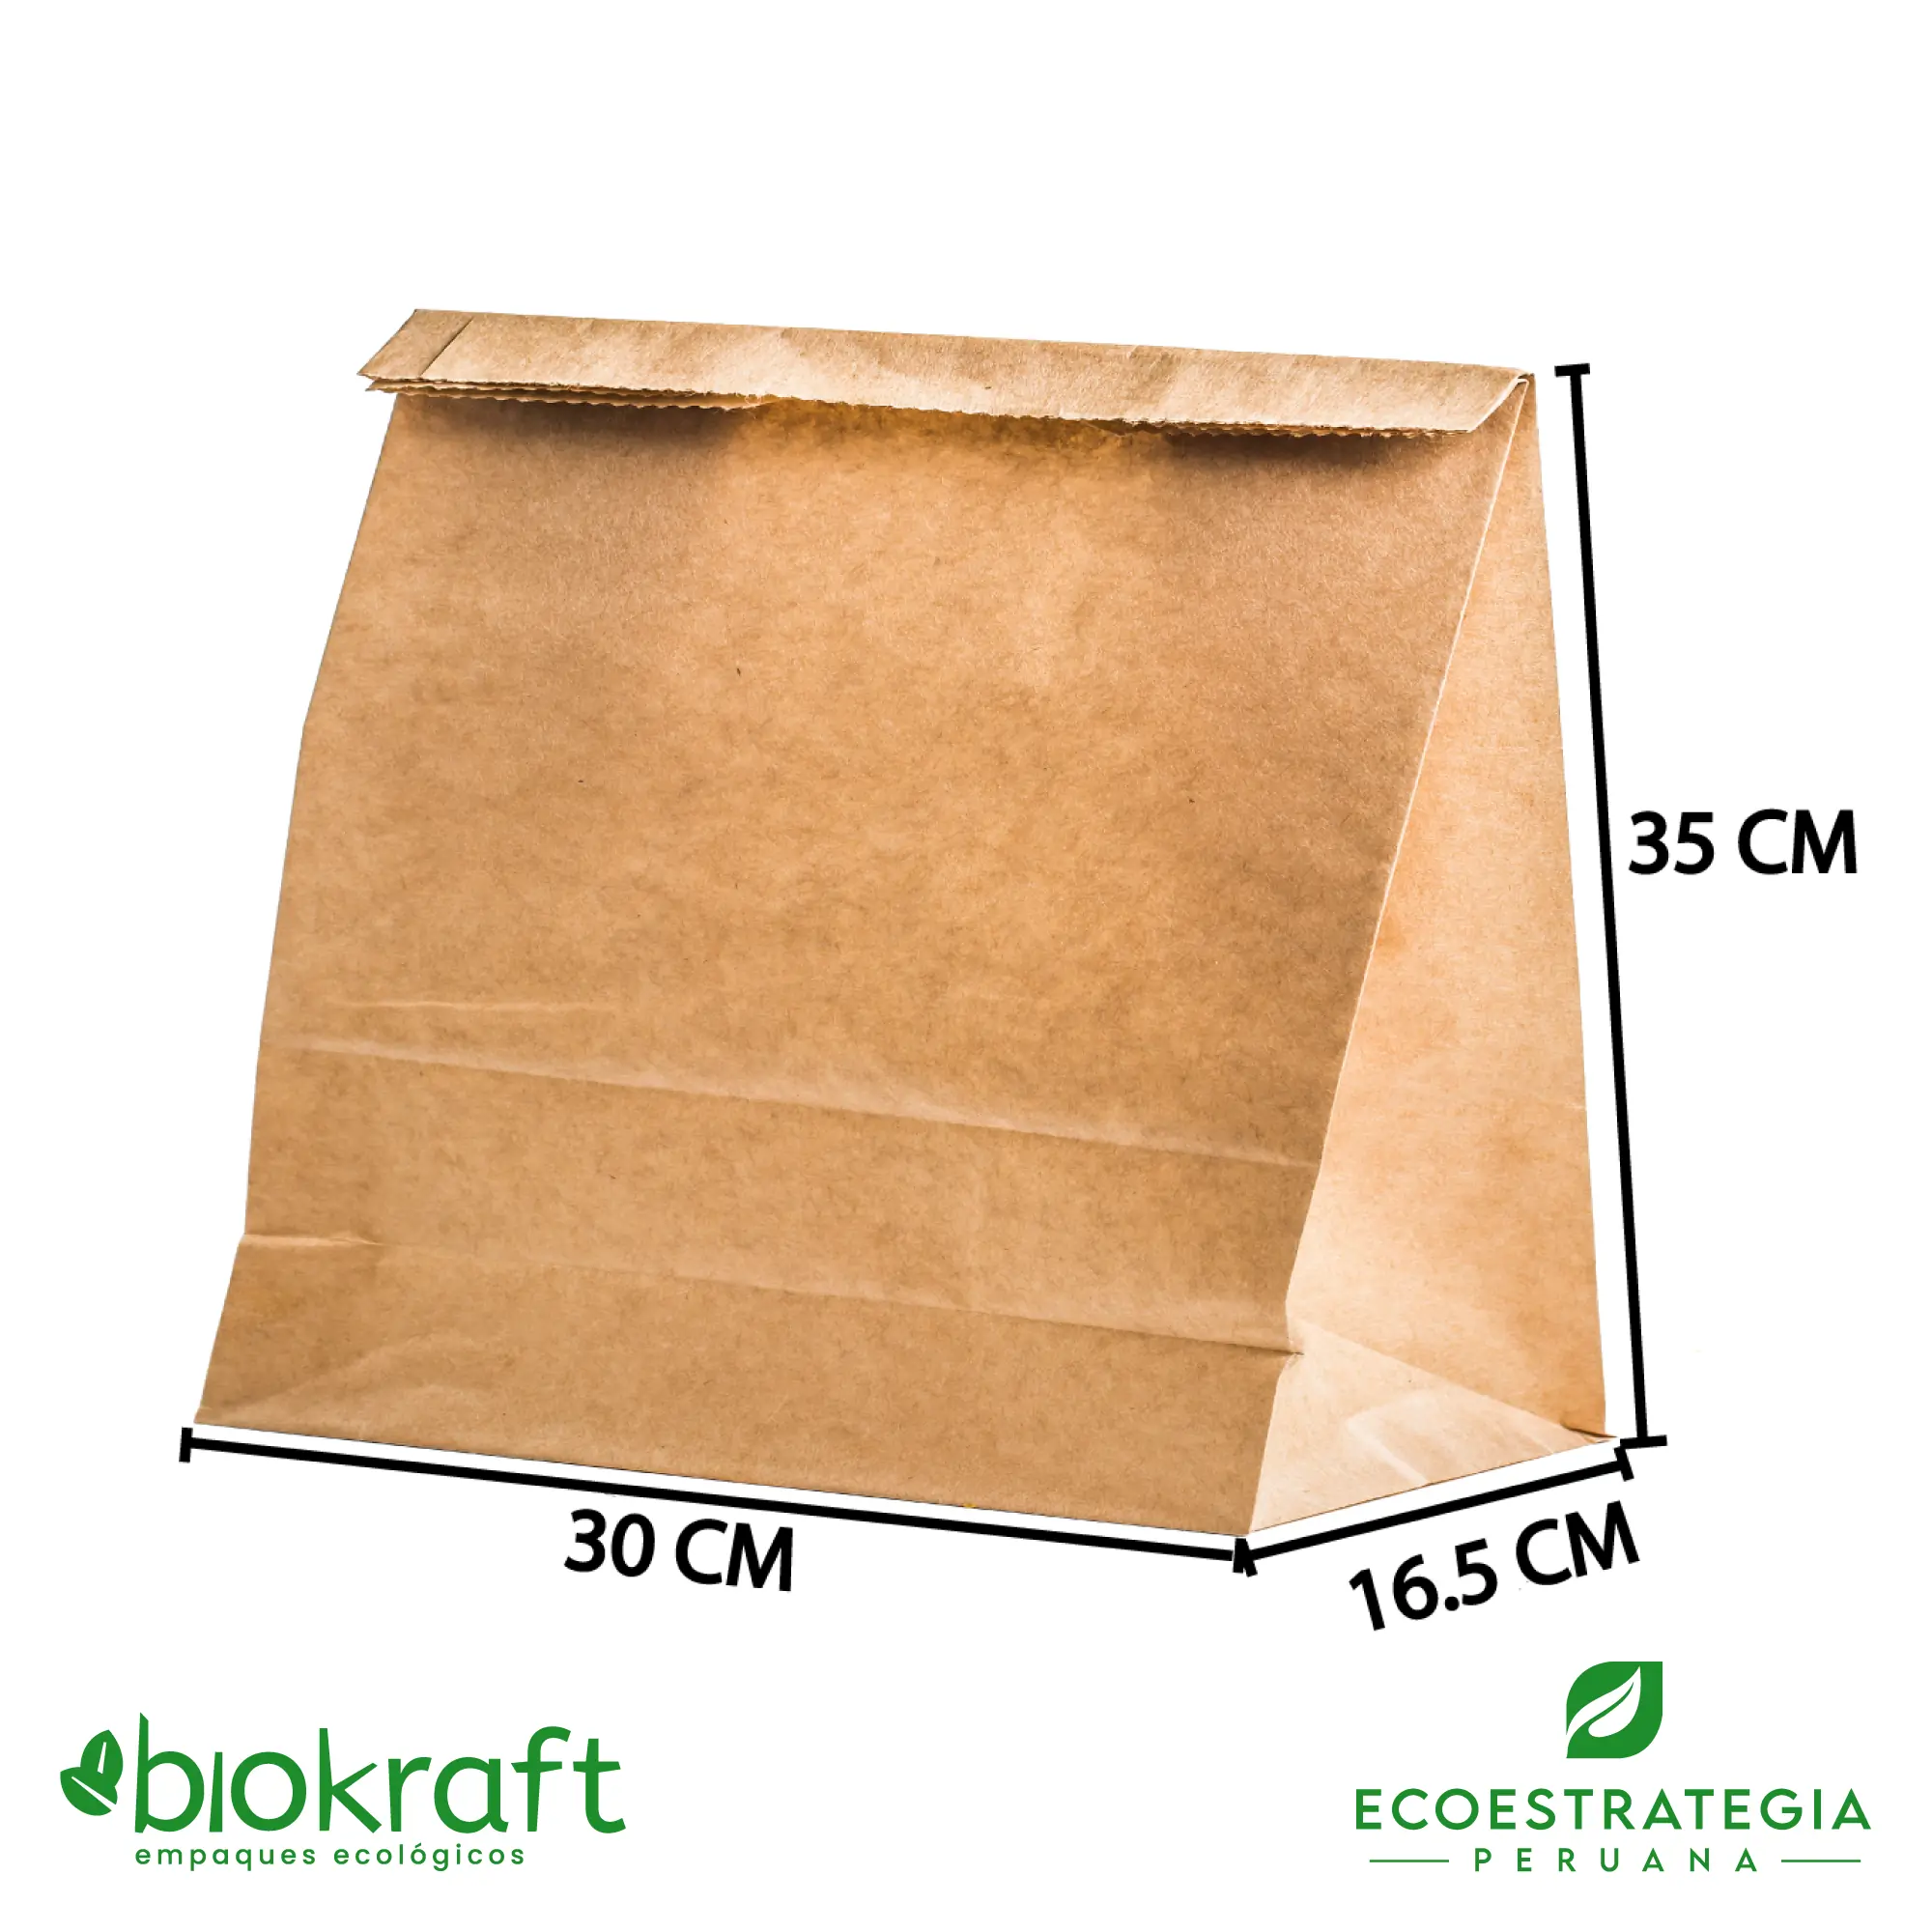 Esta bolsa de papel Kraft tiene un grosor de 80 gr y un peso de 52gr. Bolsa biodegradable de excelente gramaje y medida, ideal para comidas y productos ligeros. Cotiza ahora tus bolsas Kraft brasa corta